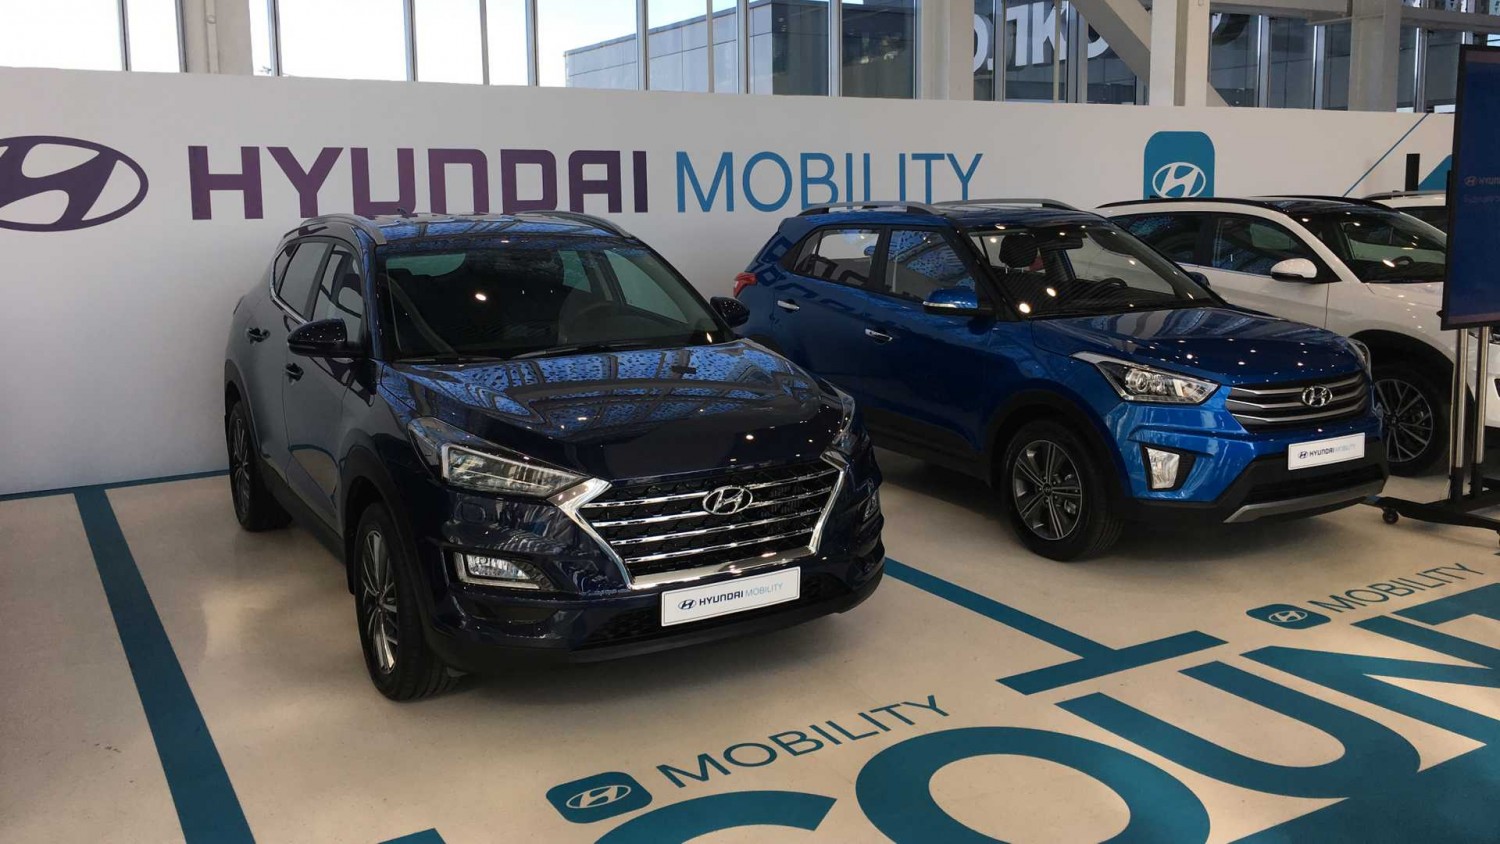 Сервис аренды авто по подписке Hyundai Mobility доступен в ещё шести городах РФ